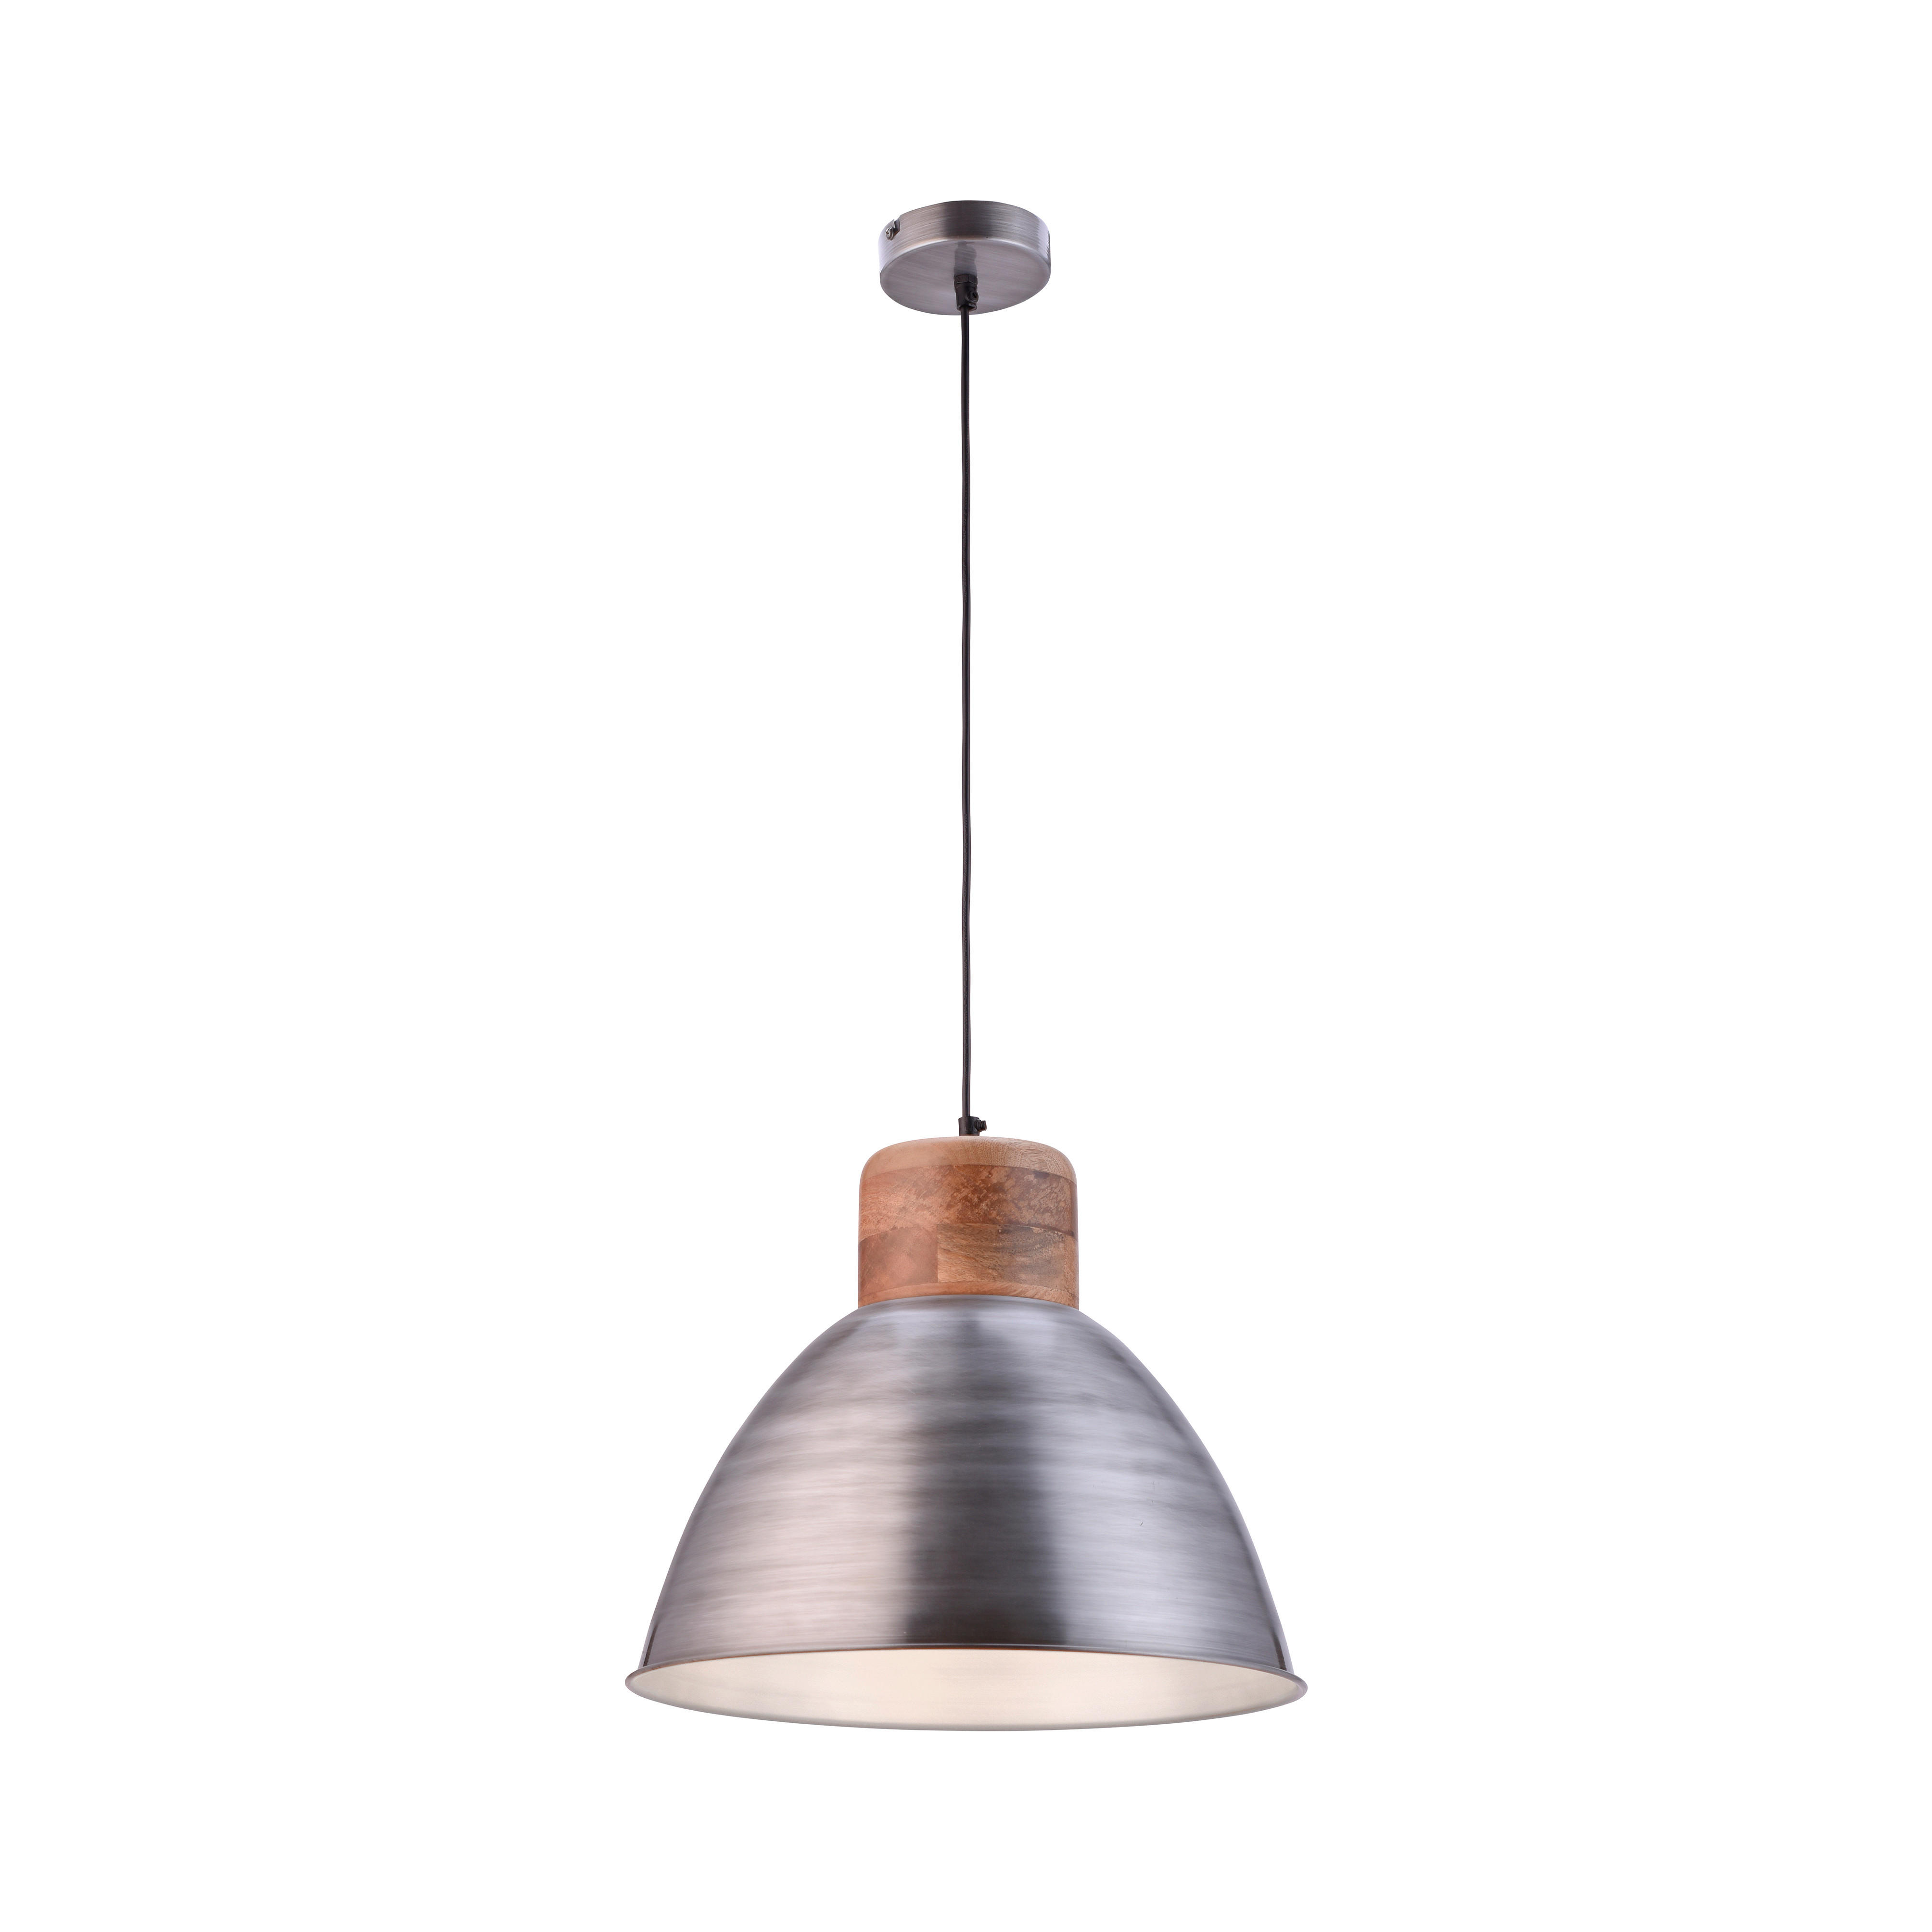 HÄNGELEUCHTE SAMIA  - Silberfarben, Design, Holz/Metall (41/120cm)